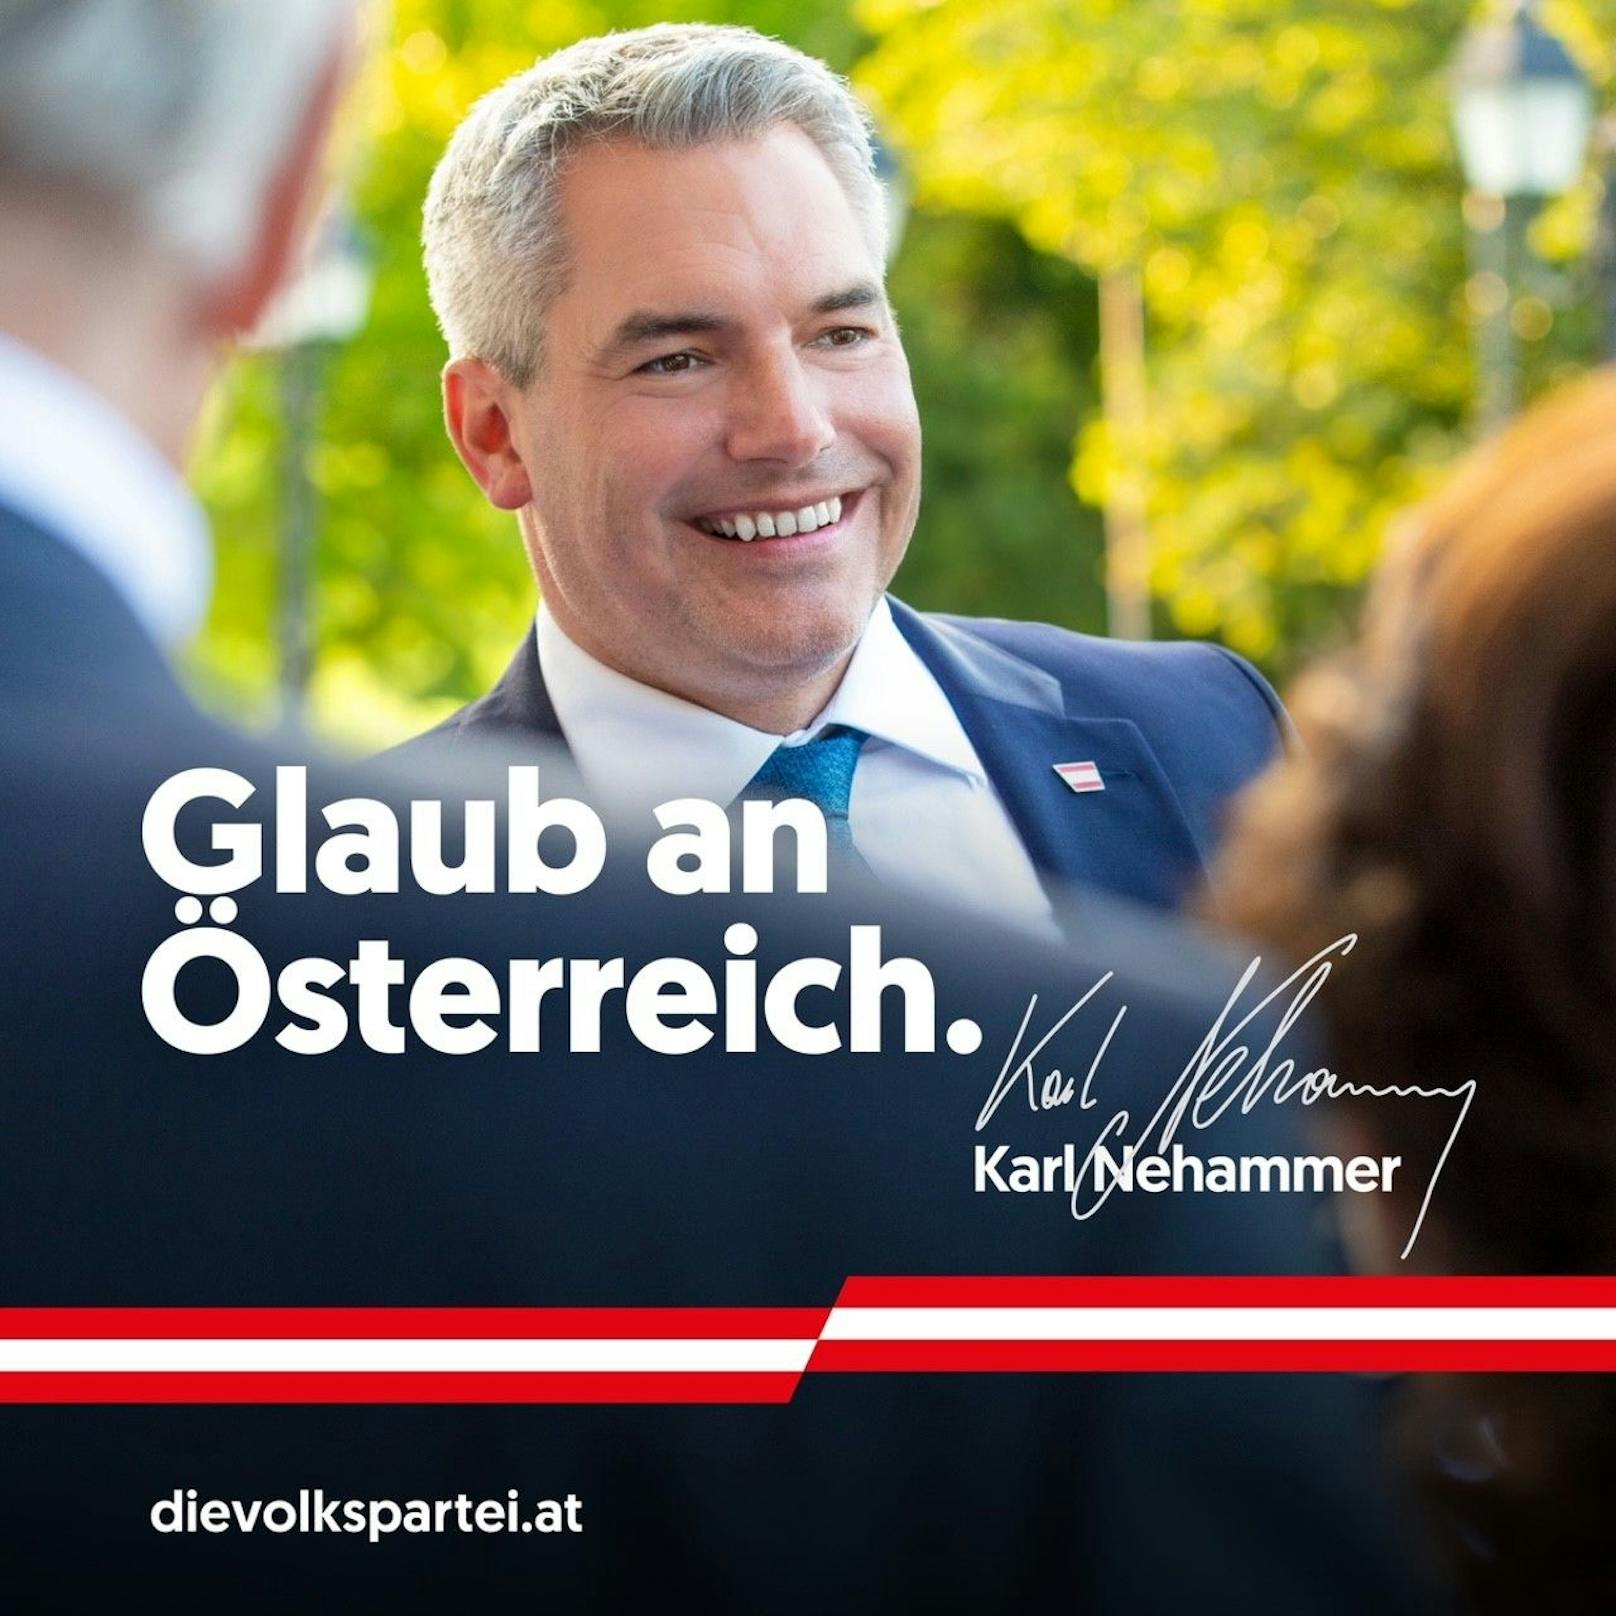 Kanzler Karl Nehammer will aus Österreich ein Land der Gläubigen machen.